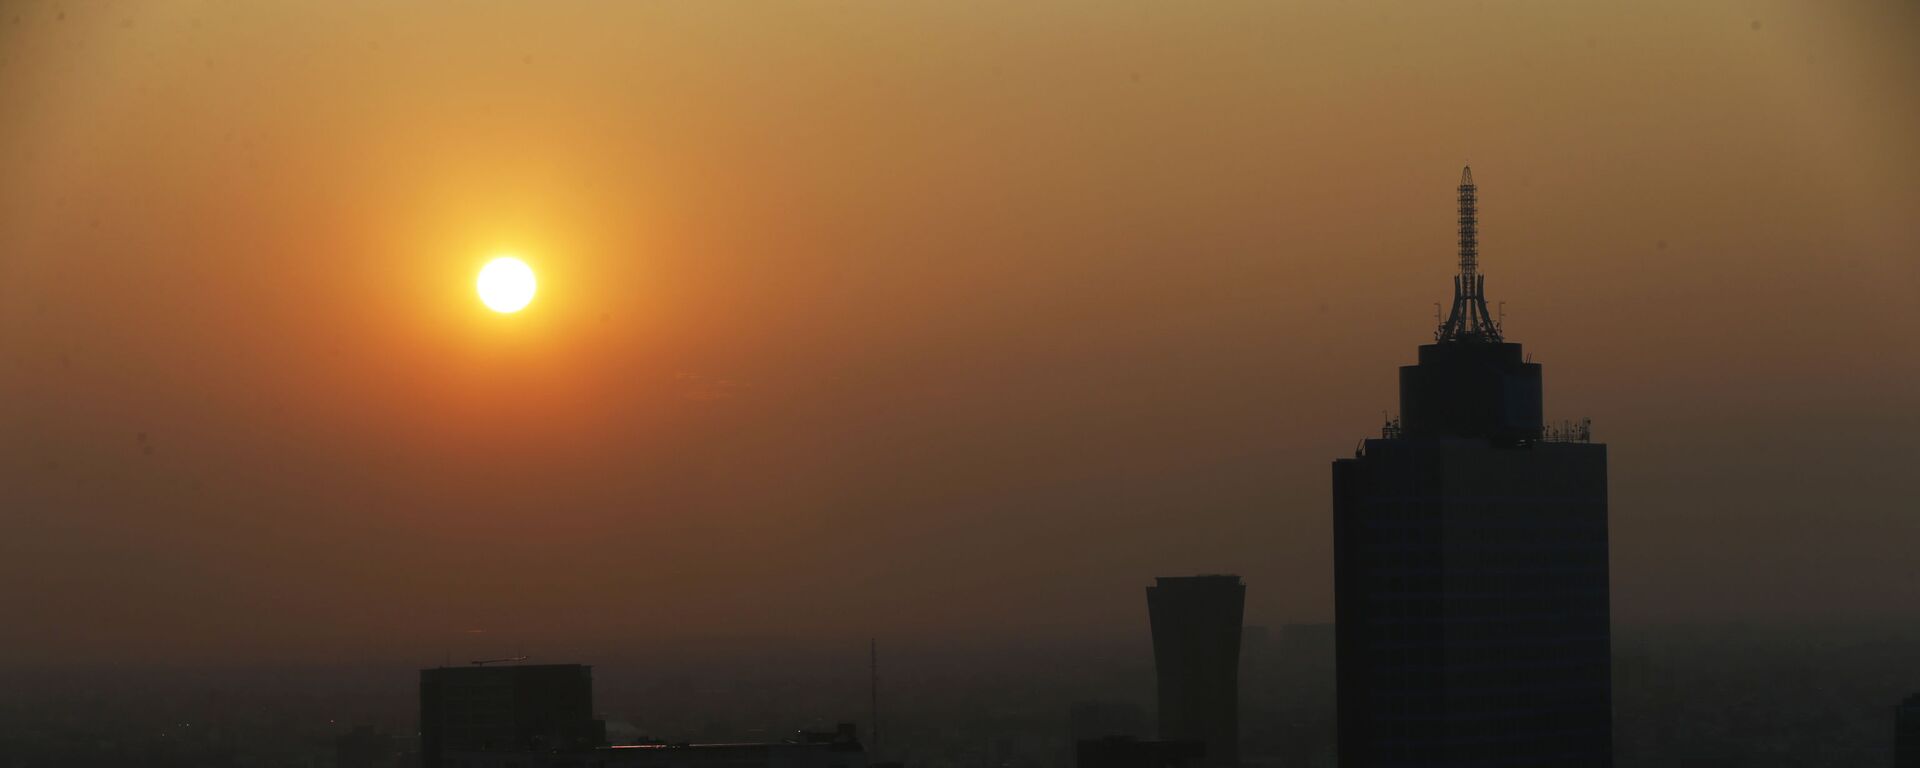 El sol sale en medio del esmog en la Ciudad de México - Sputnik Mundo, 1920, 29.01.2021